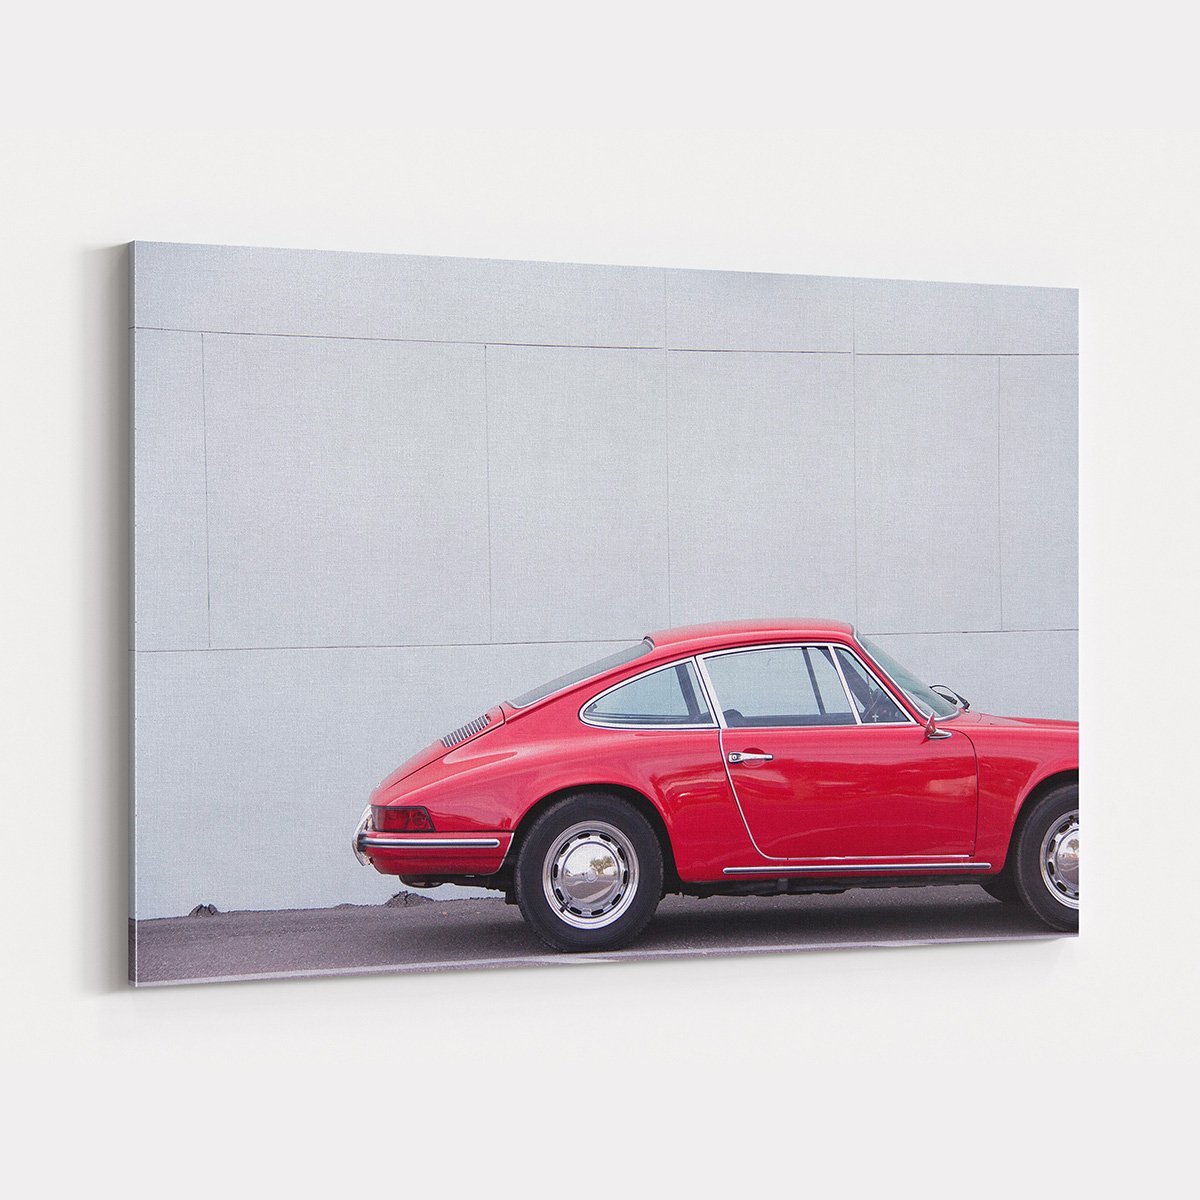 Canvas701 | Nostalji Kırmızı Araba Kanvas Tablo - 